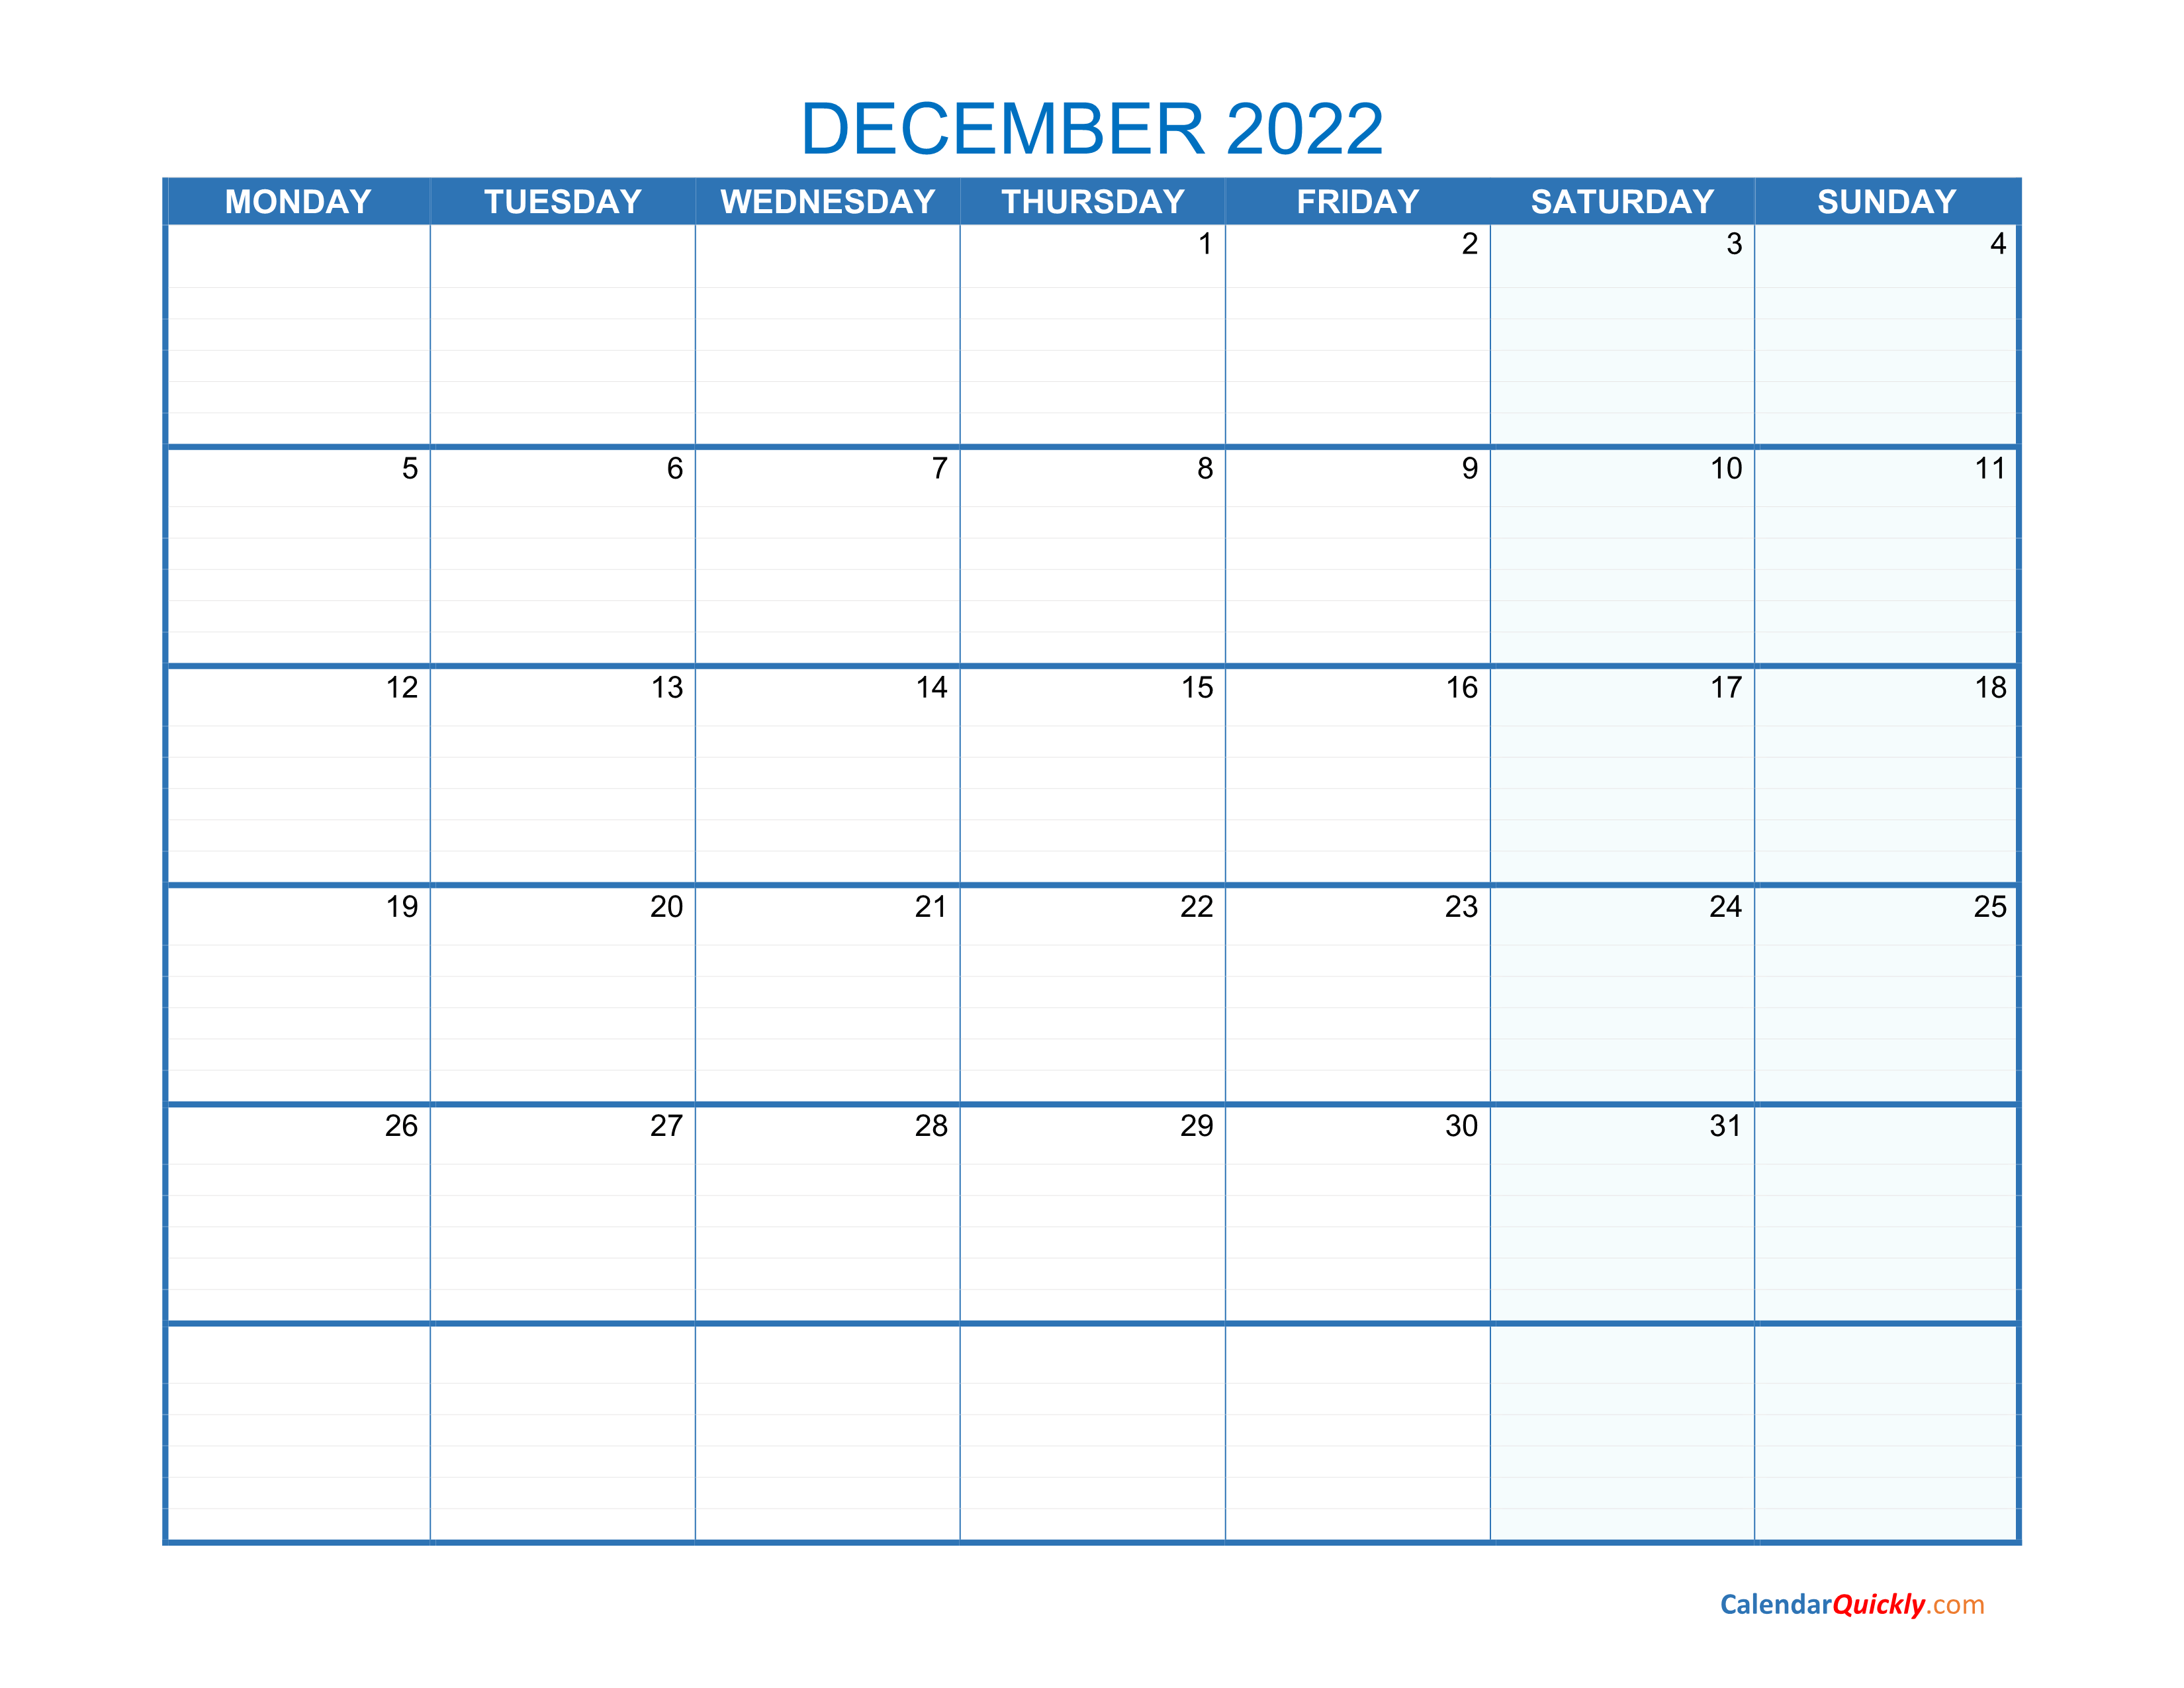 December Monday 2022 Blank Calendar | Calendar Quickly